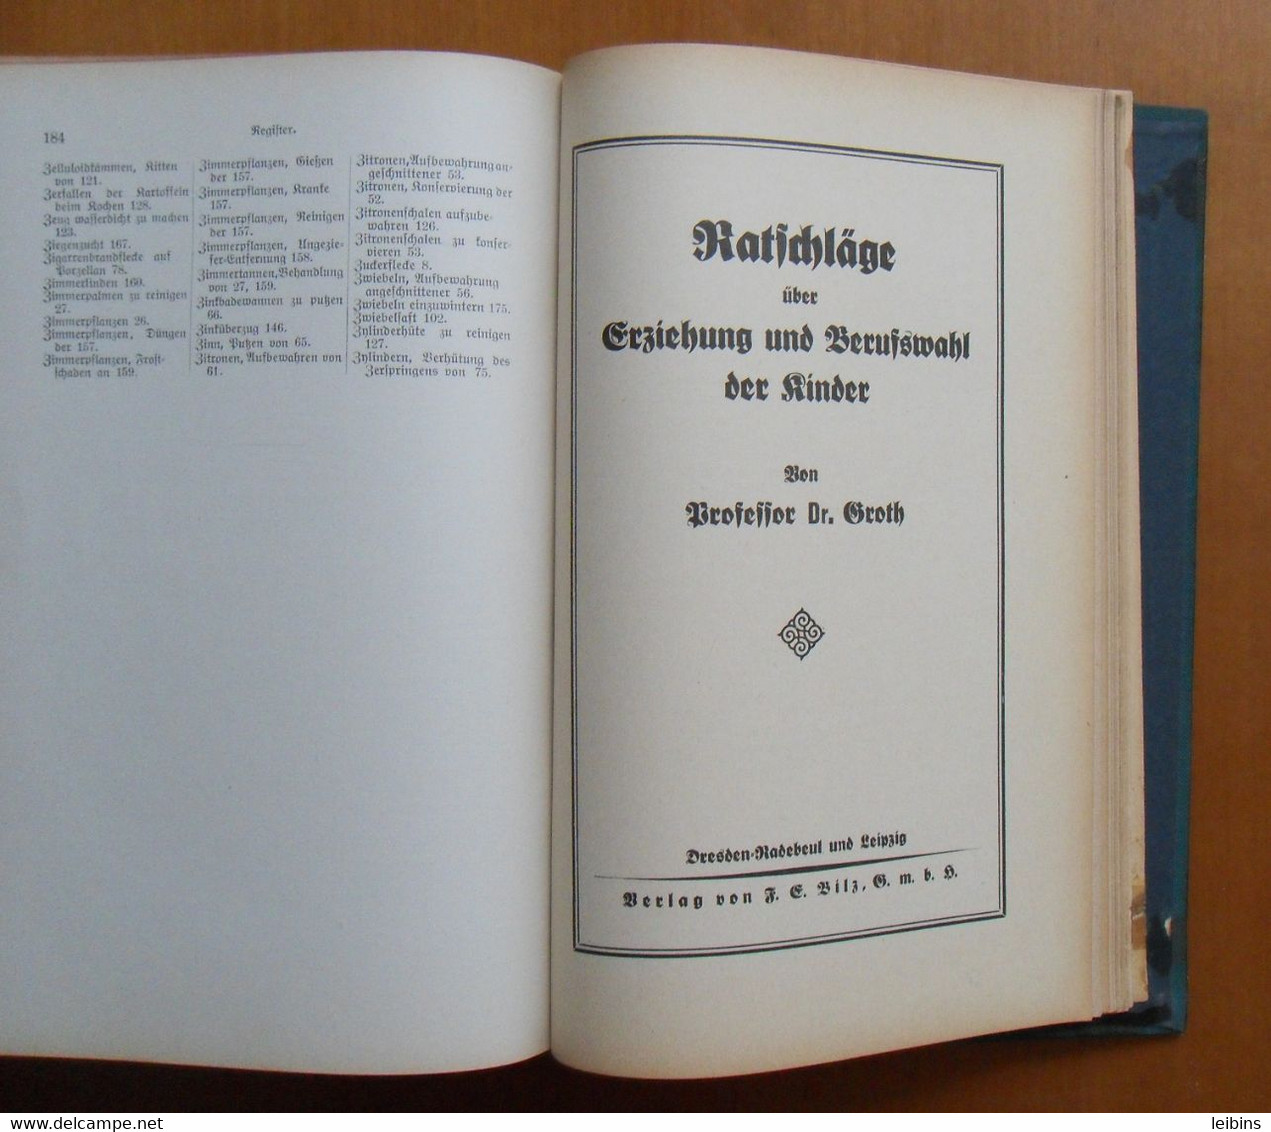 Bilz Handbuch des Wissens - Ehrlich, Dr. jur.